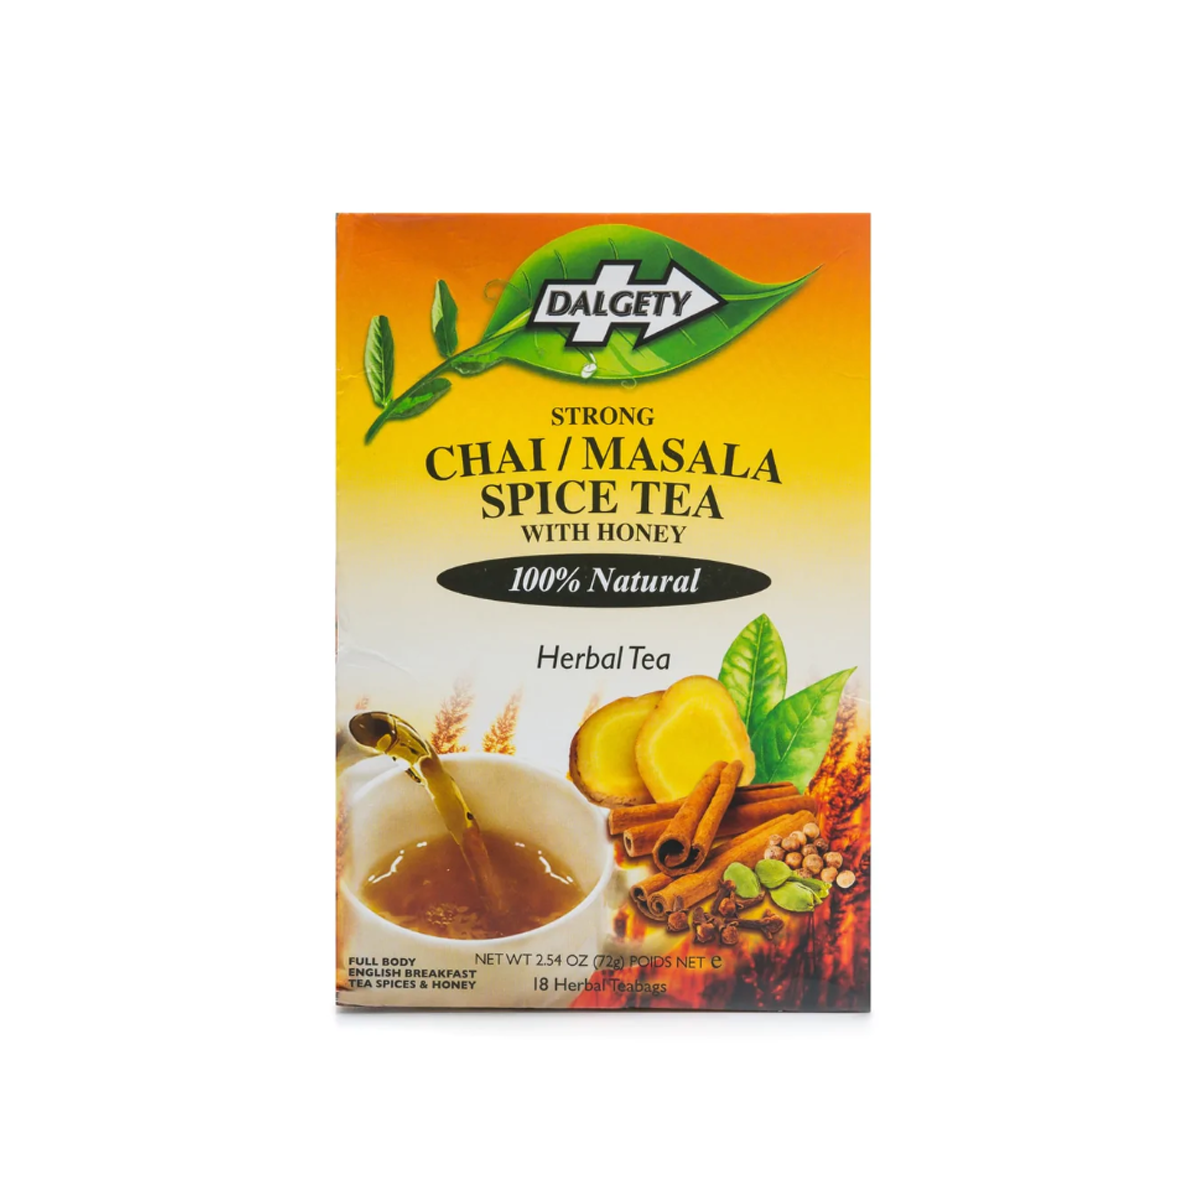 Dalgety Chai masala spice tea